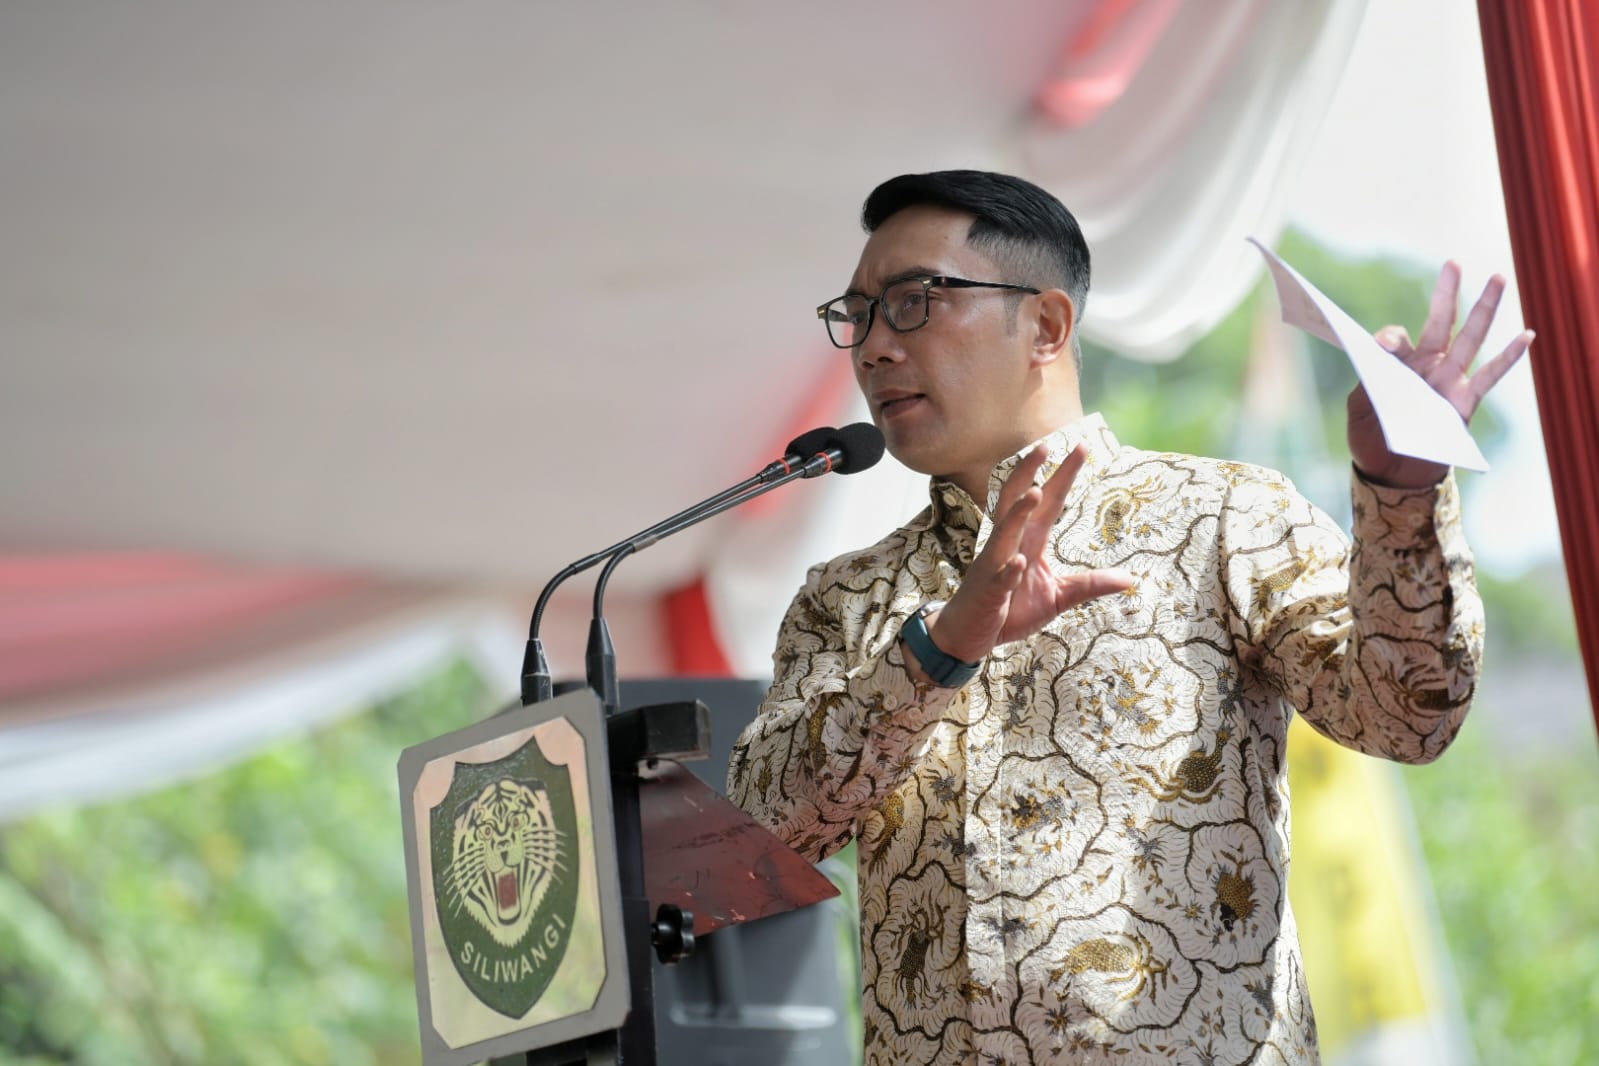 Jaga Lingkungan, Ridwan Kamil Apresiasi Mesin Pengolah Kodam III Siliwangi